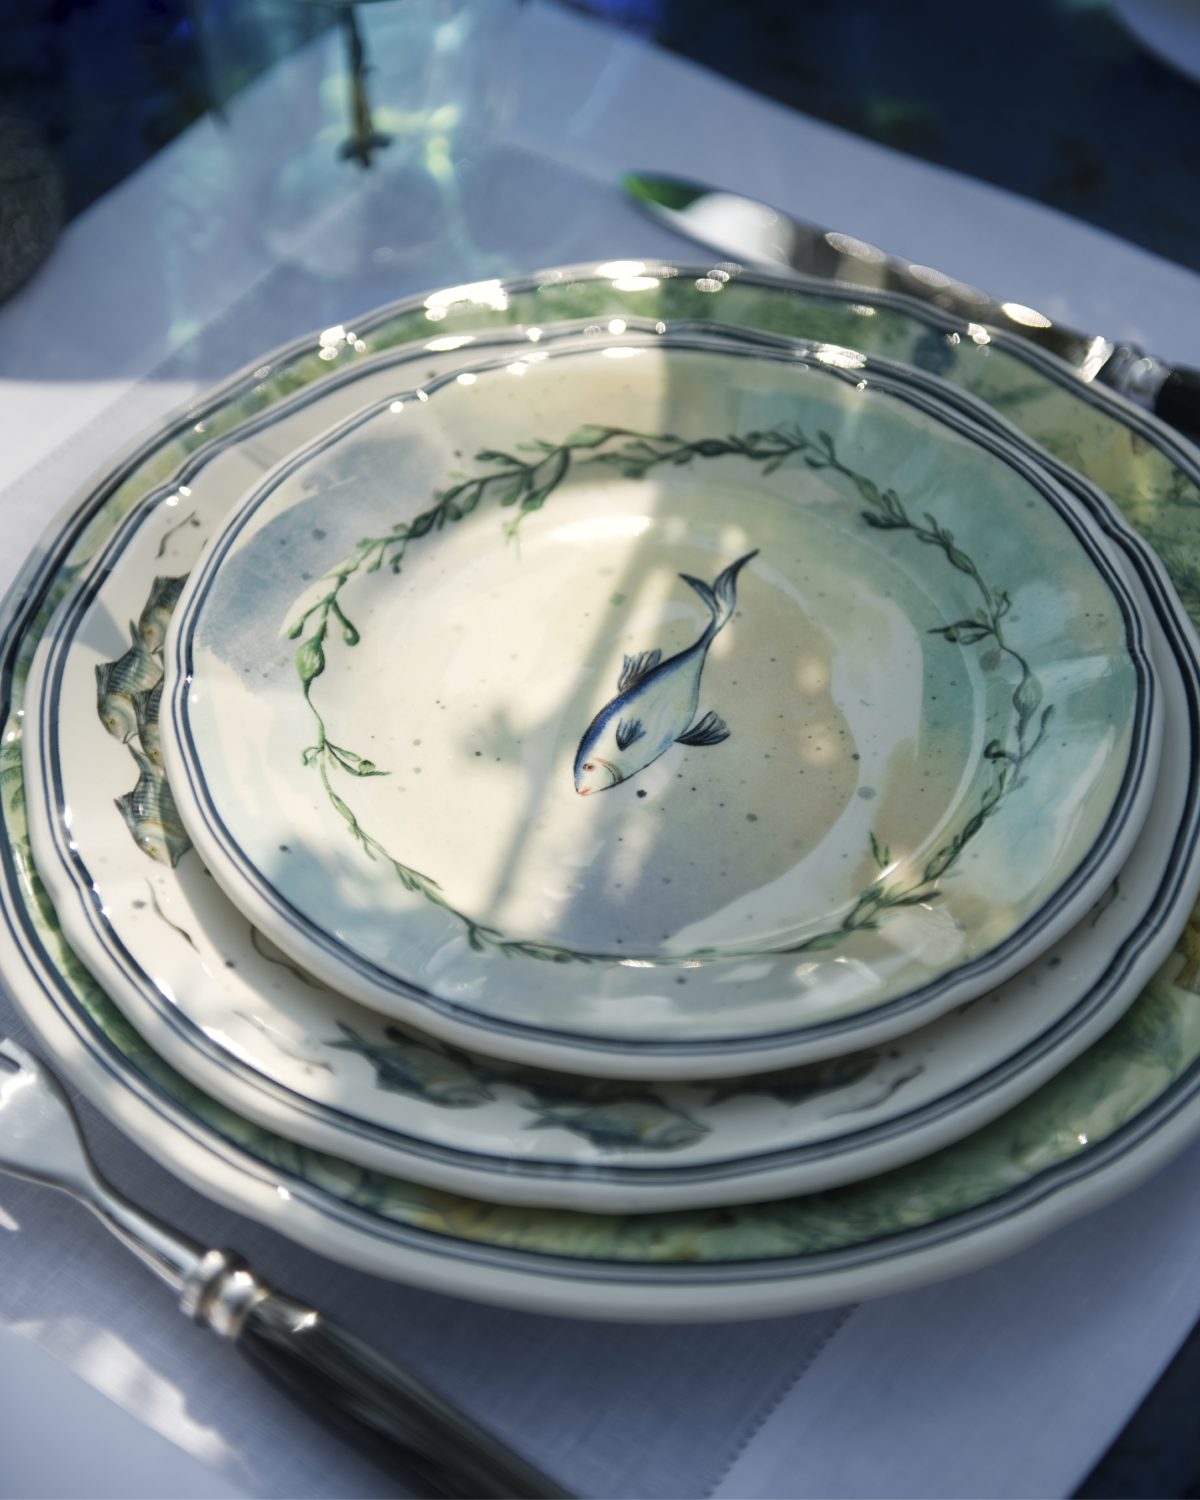 Dior Maison посвятил коллекцию посуды подводному миру (фото 4)